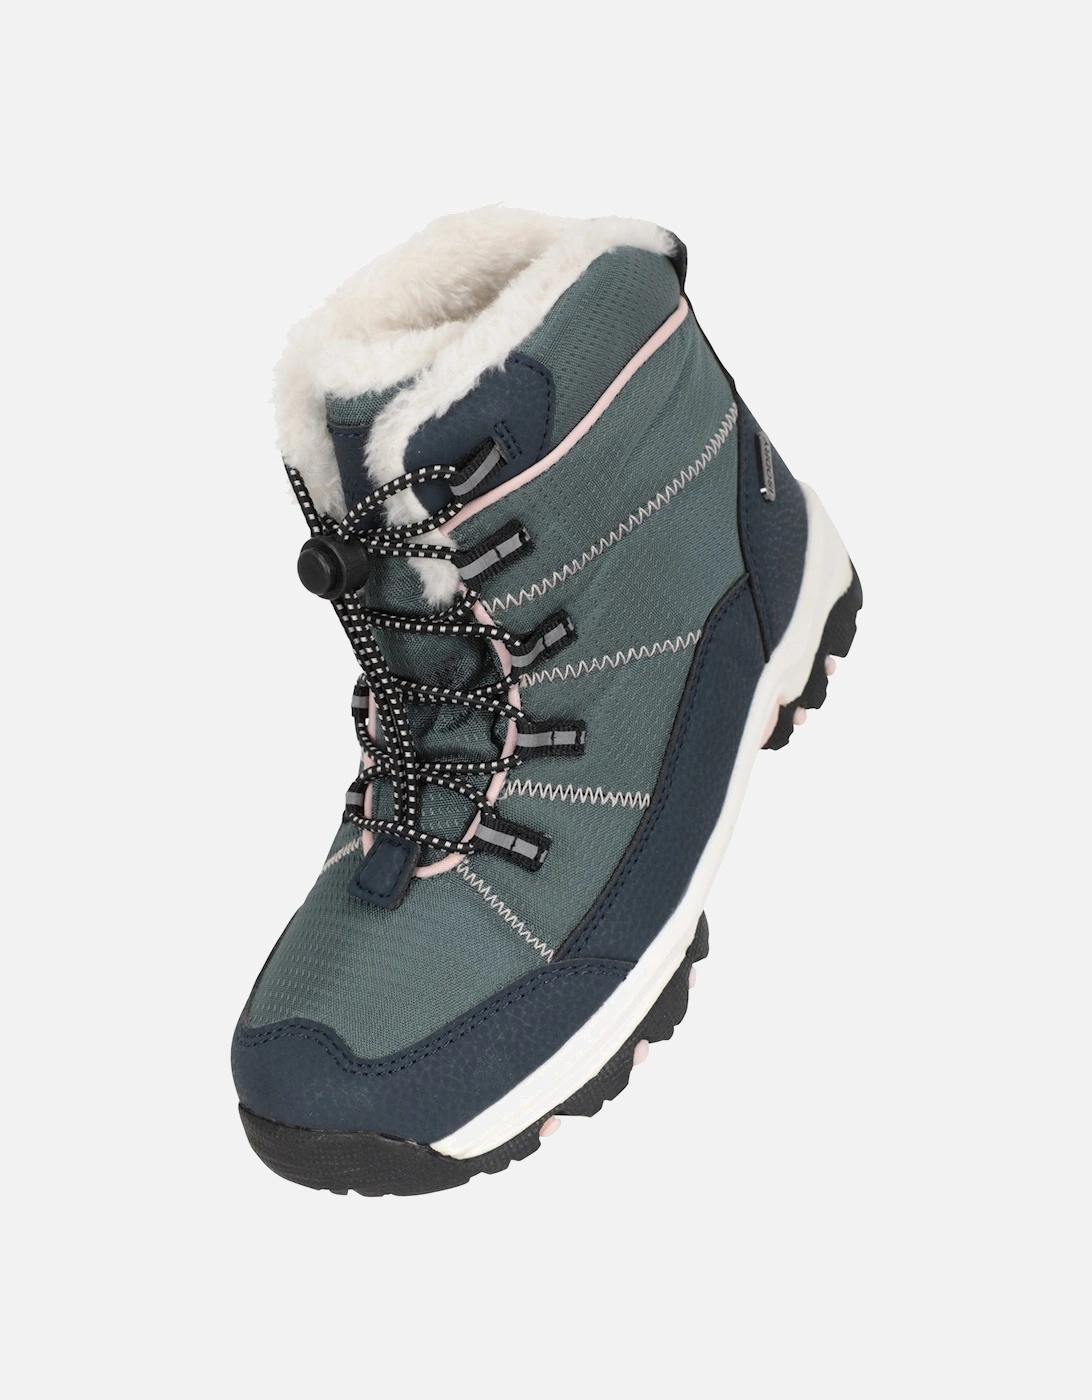 Childrens/Kids Comet Waterproof Snow Boots, 6 of 5